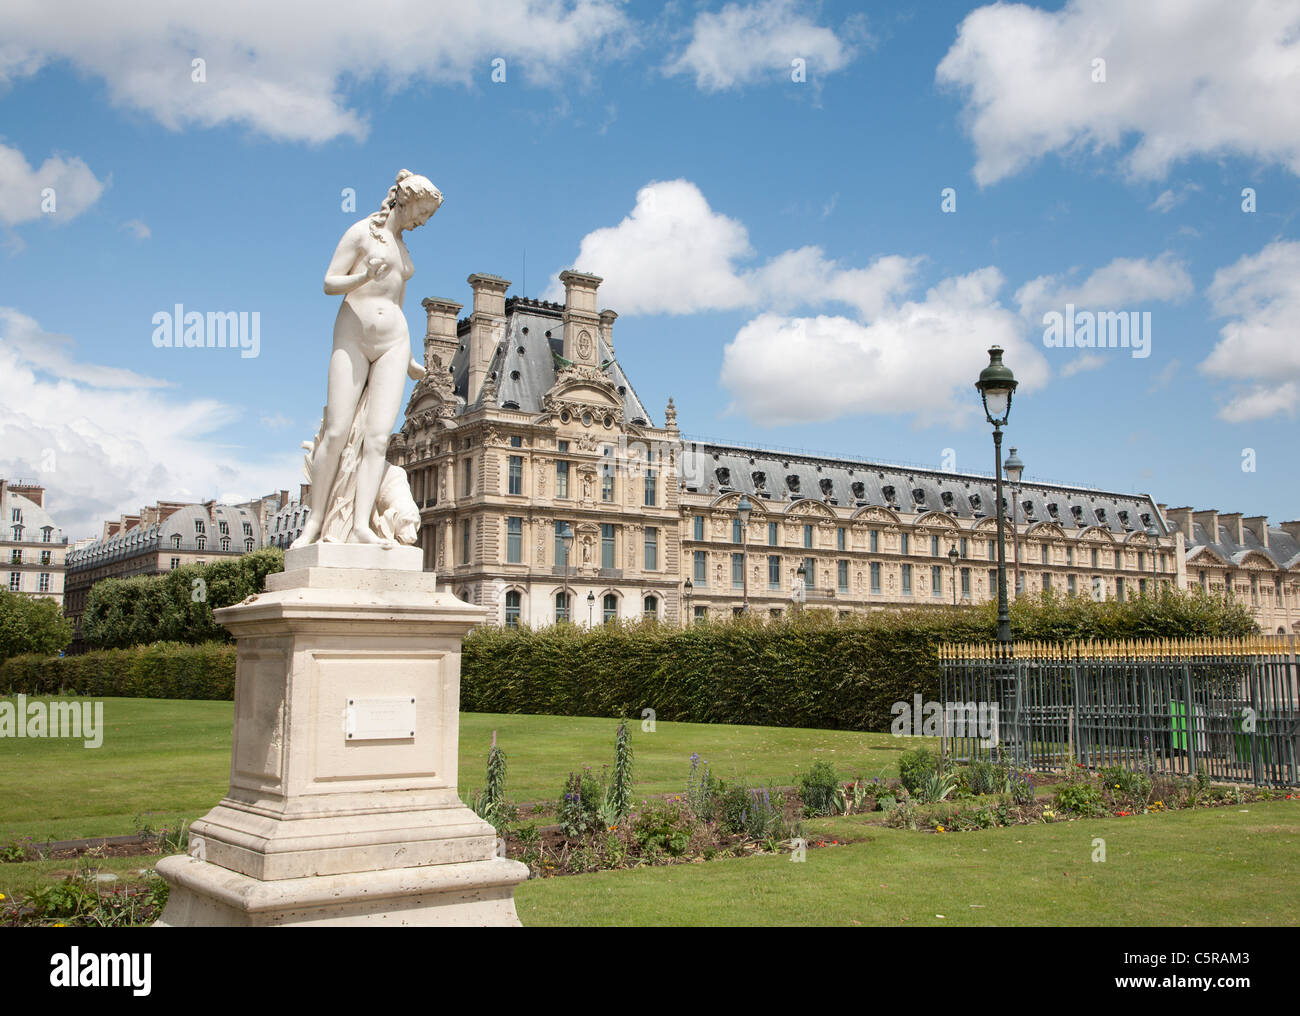 Paris - Venus Statue from Tuileries garden Stock Photo